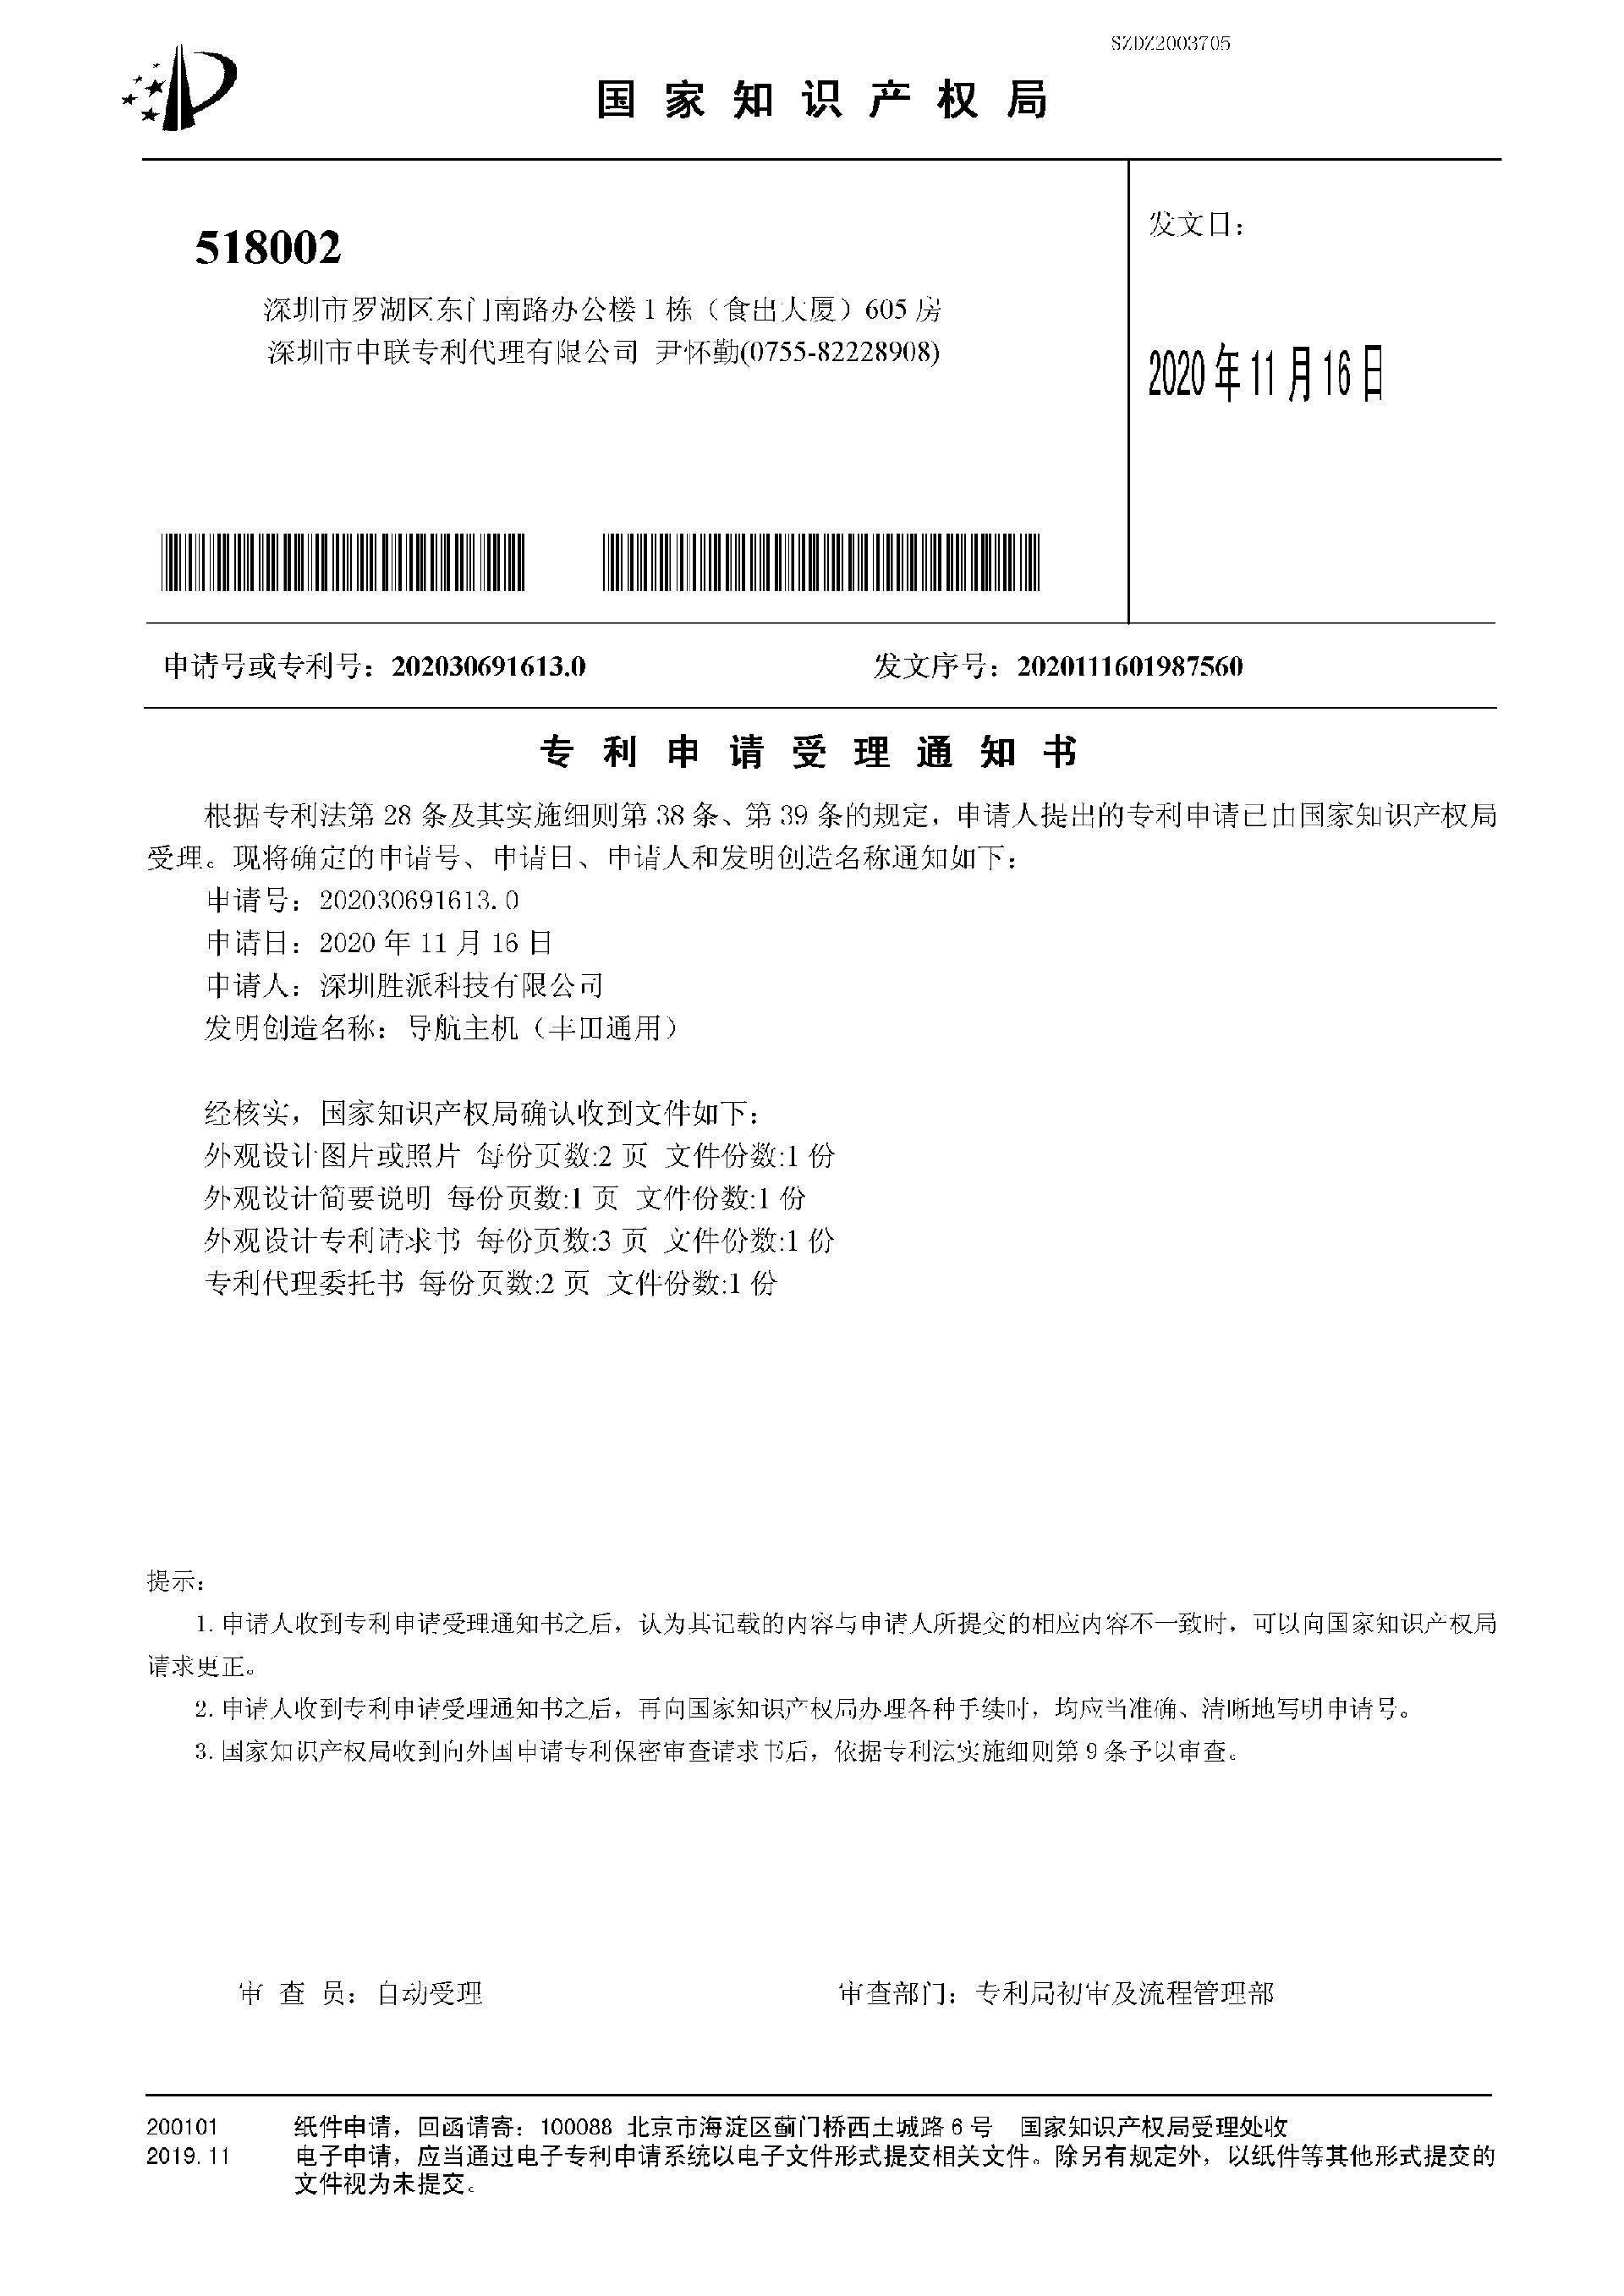 专利受理(丰田）-1.jpg